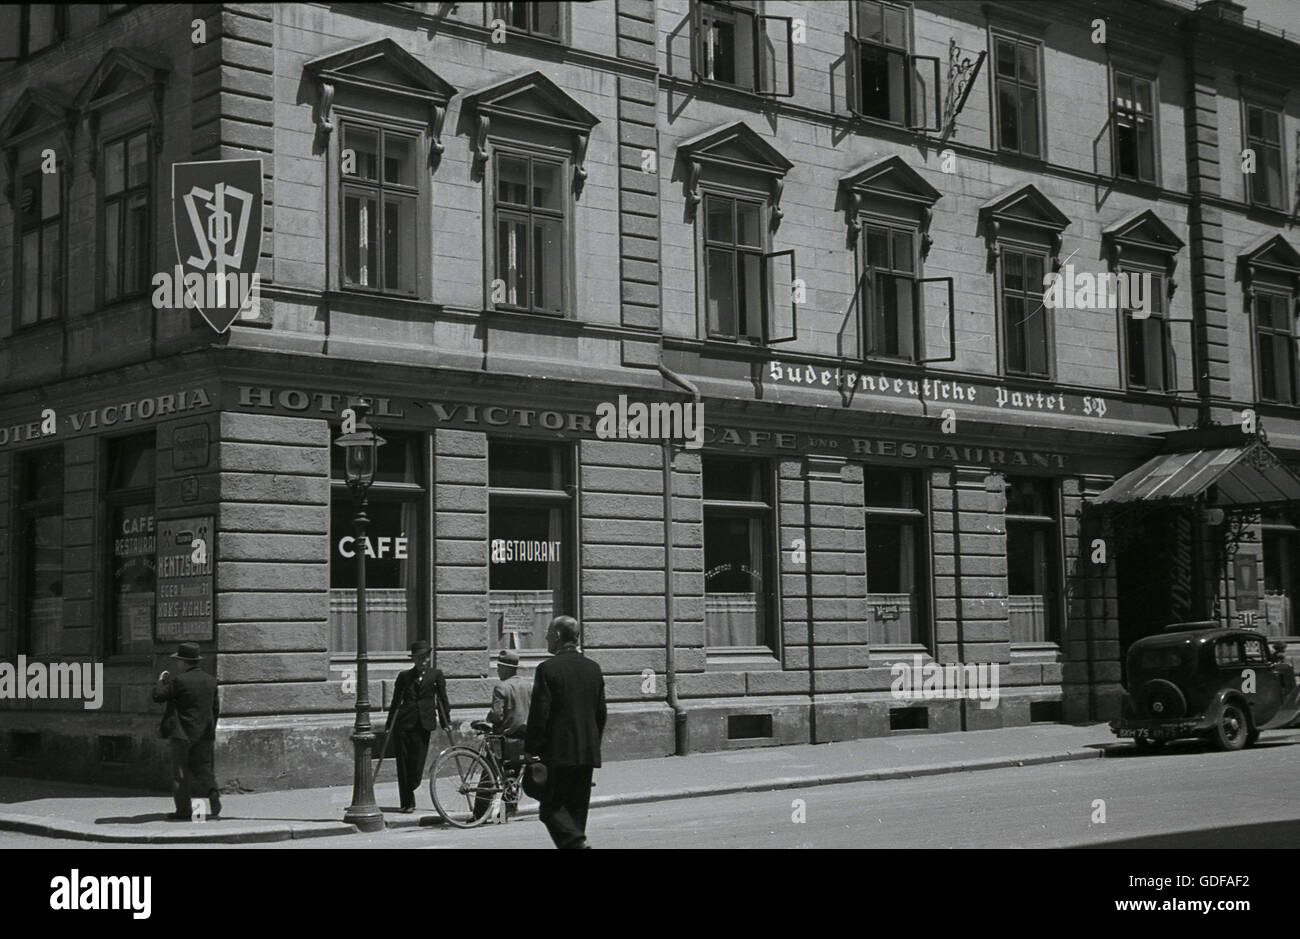 Années 1930, l'historique siège de l'allemand des Sudètes (SDP) au-dessus de l'hôtel Victoria à Cheb (Eger) Sudetenland, entre-deux-guerres la Tchécoslovaquie. Une voiture avec un numéro de la plaque est garée à l'extérieur. Banque D'Images